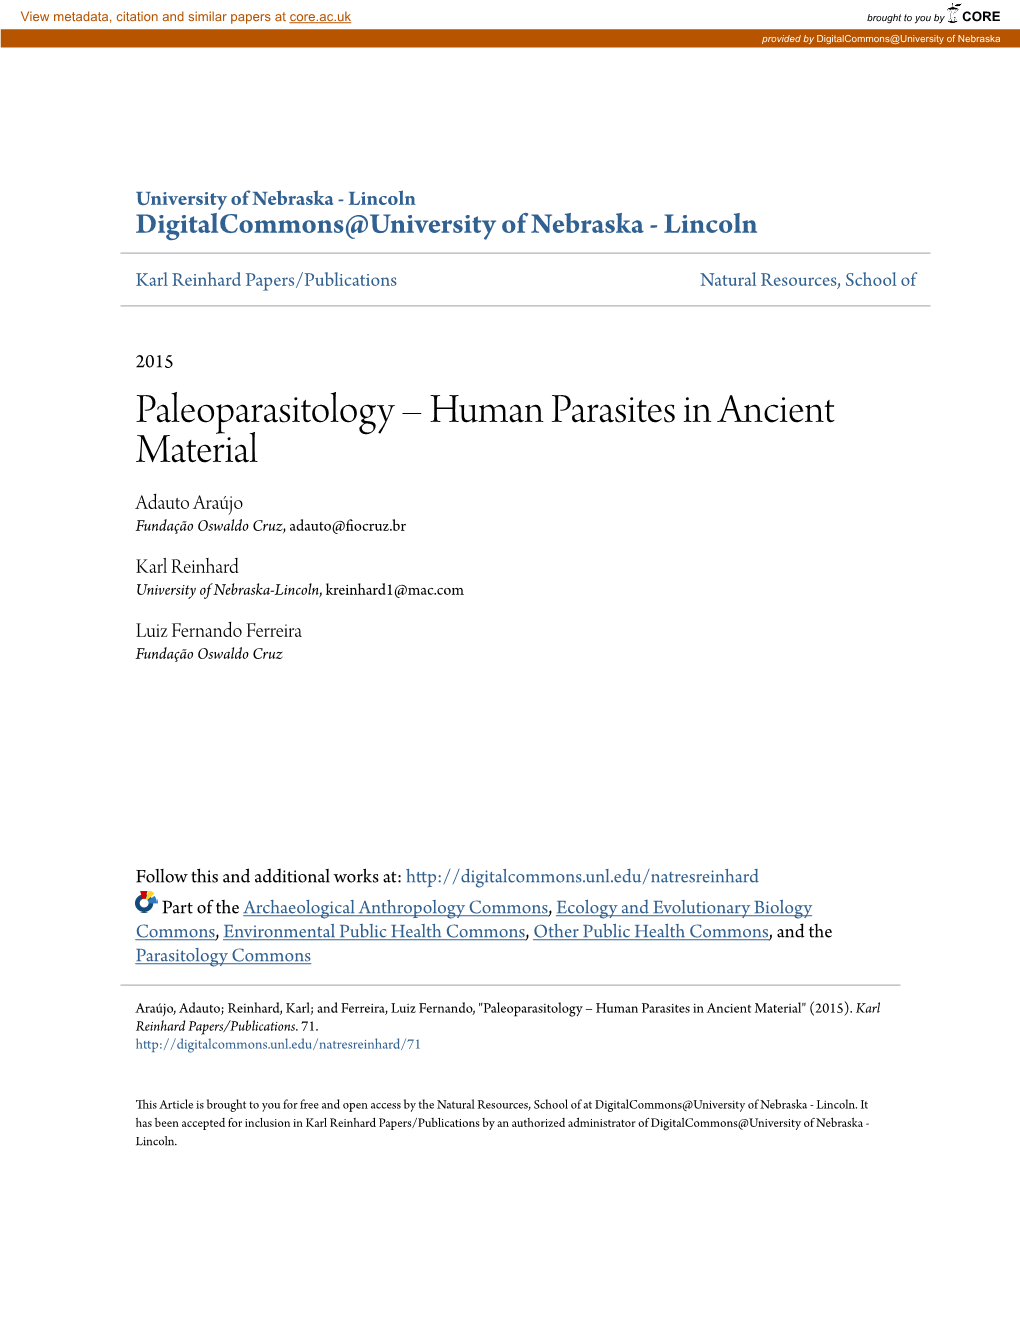 Paleoparasitology – Human Parasites in Ancient Material Adauto Araújo Fundação Oswaldo Cruz, Adauto@Fiocruz.Br